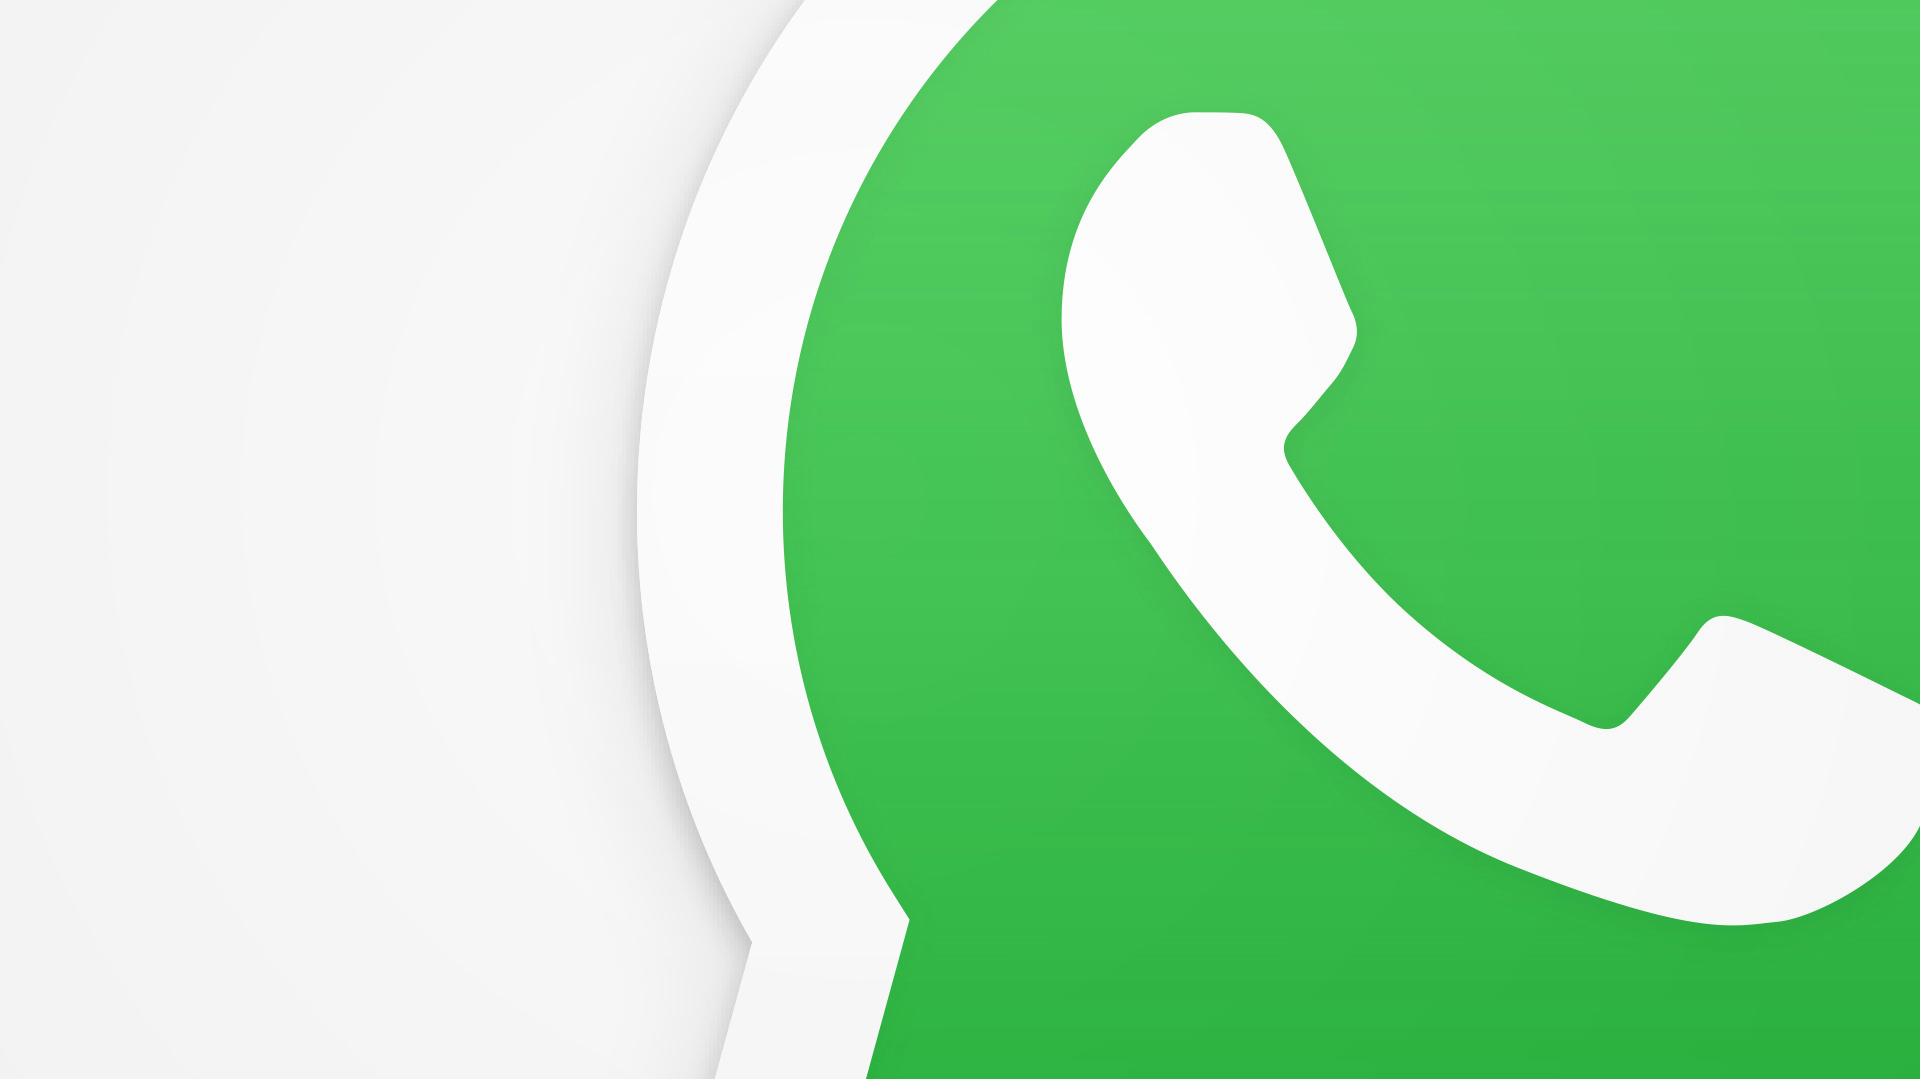 WhatsApp-Status anonym ansehen - so geht's | heise online